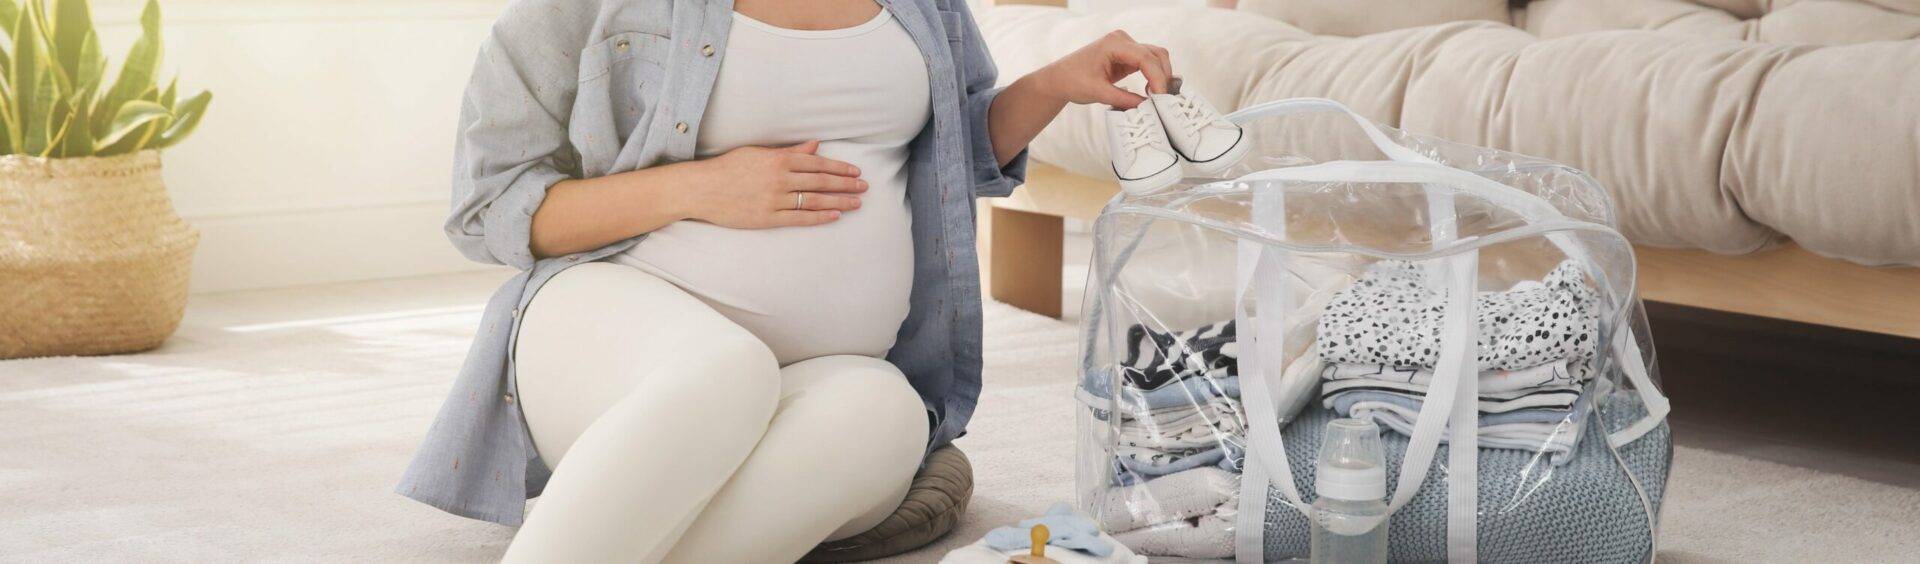 o que levar para a maternidade